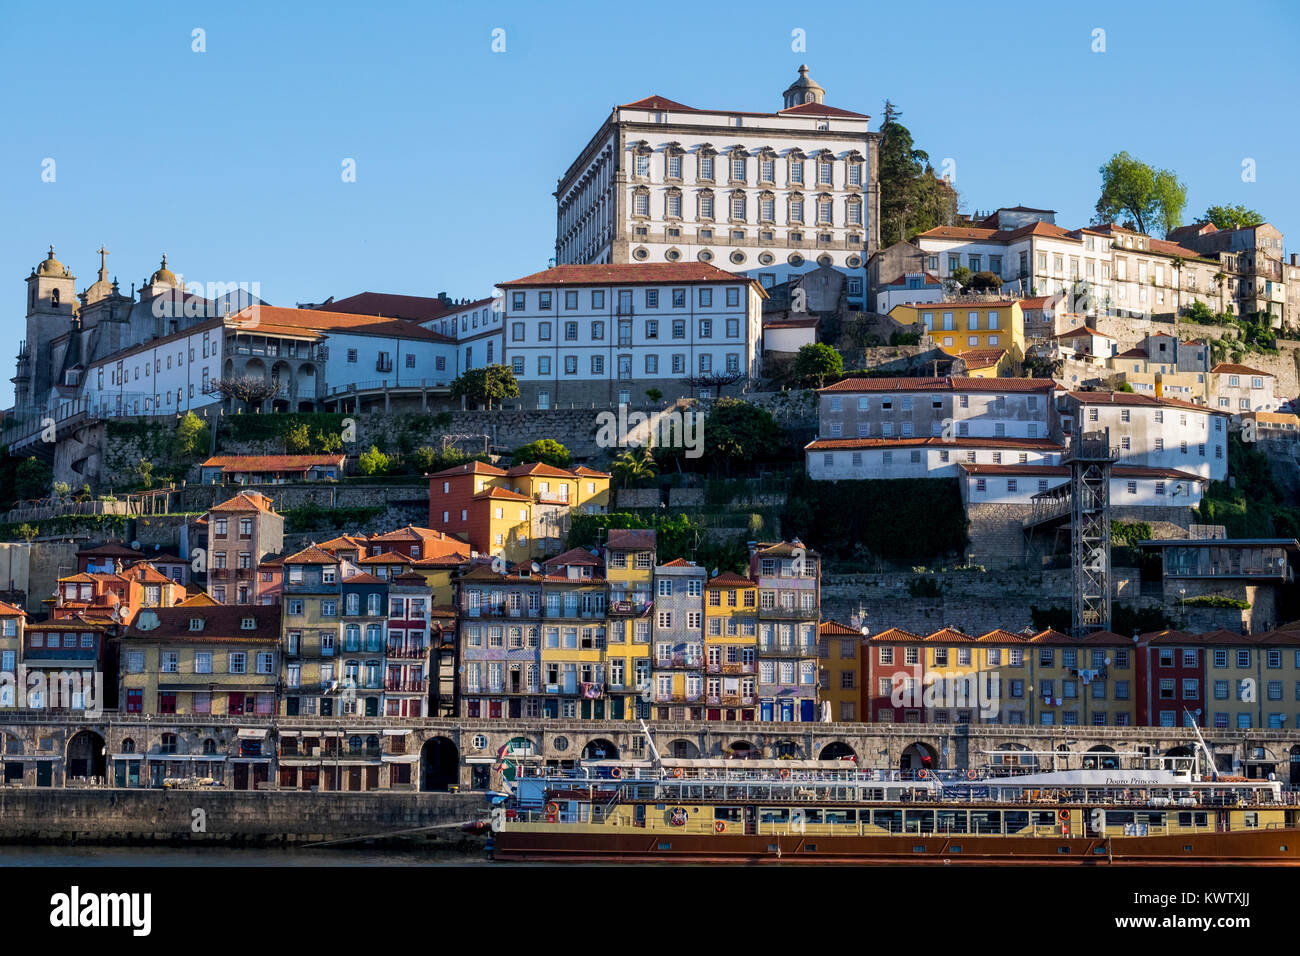 Skyline de Porto sur la rivière Douro, Portugal Banque D'Images